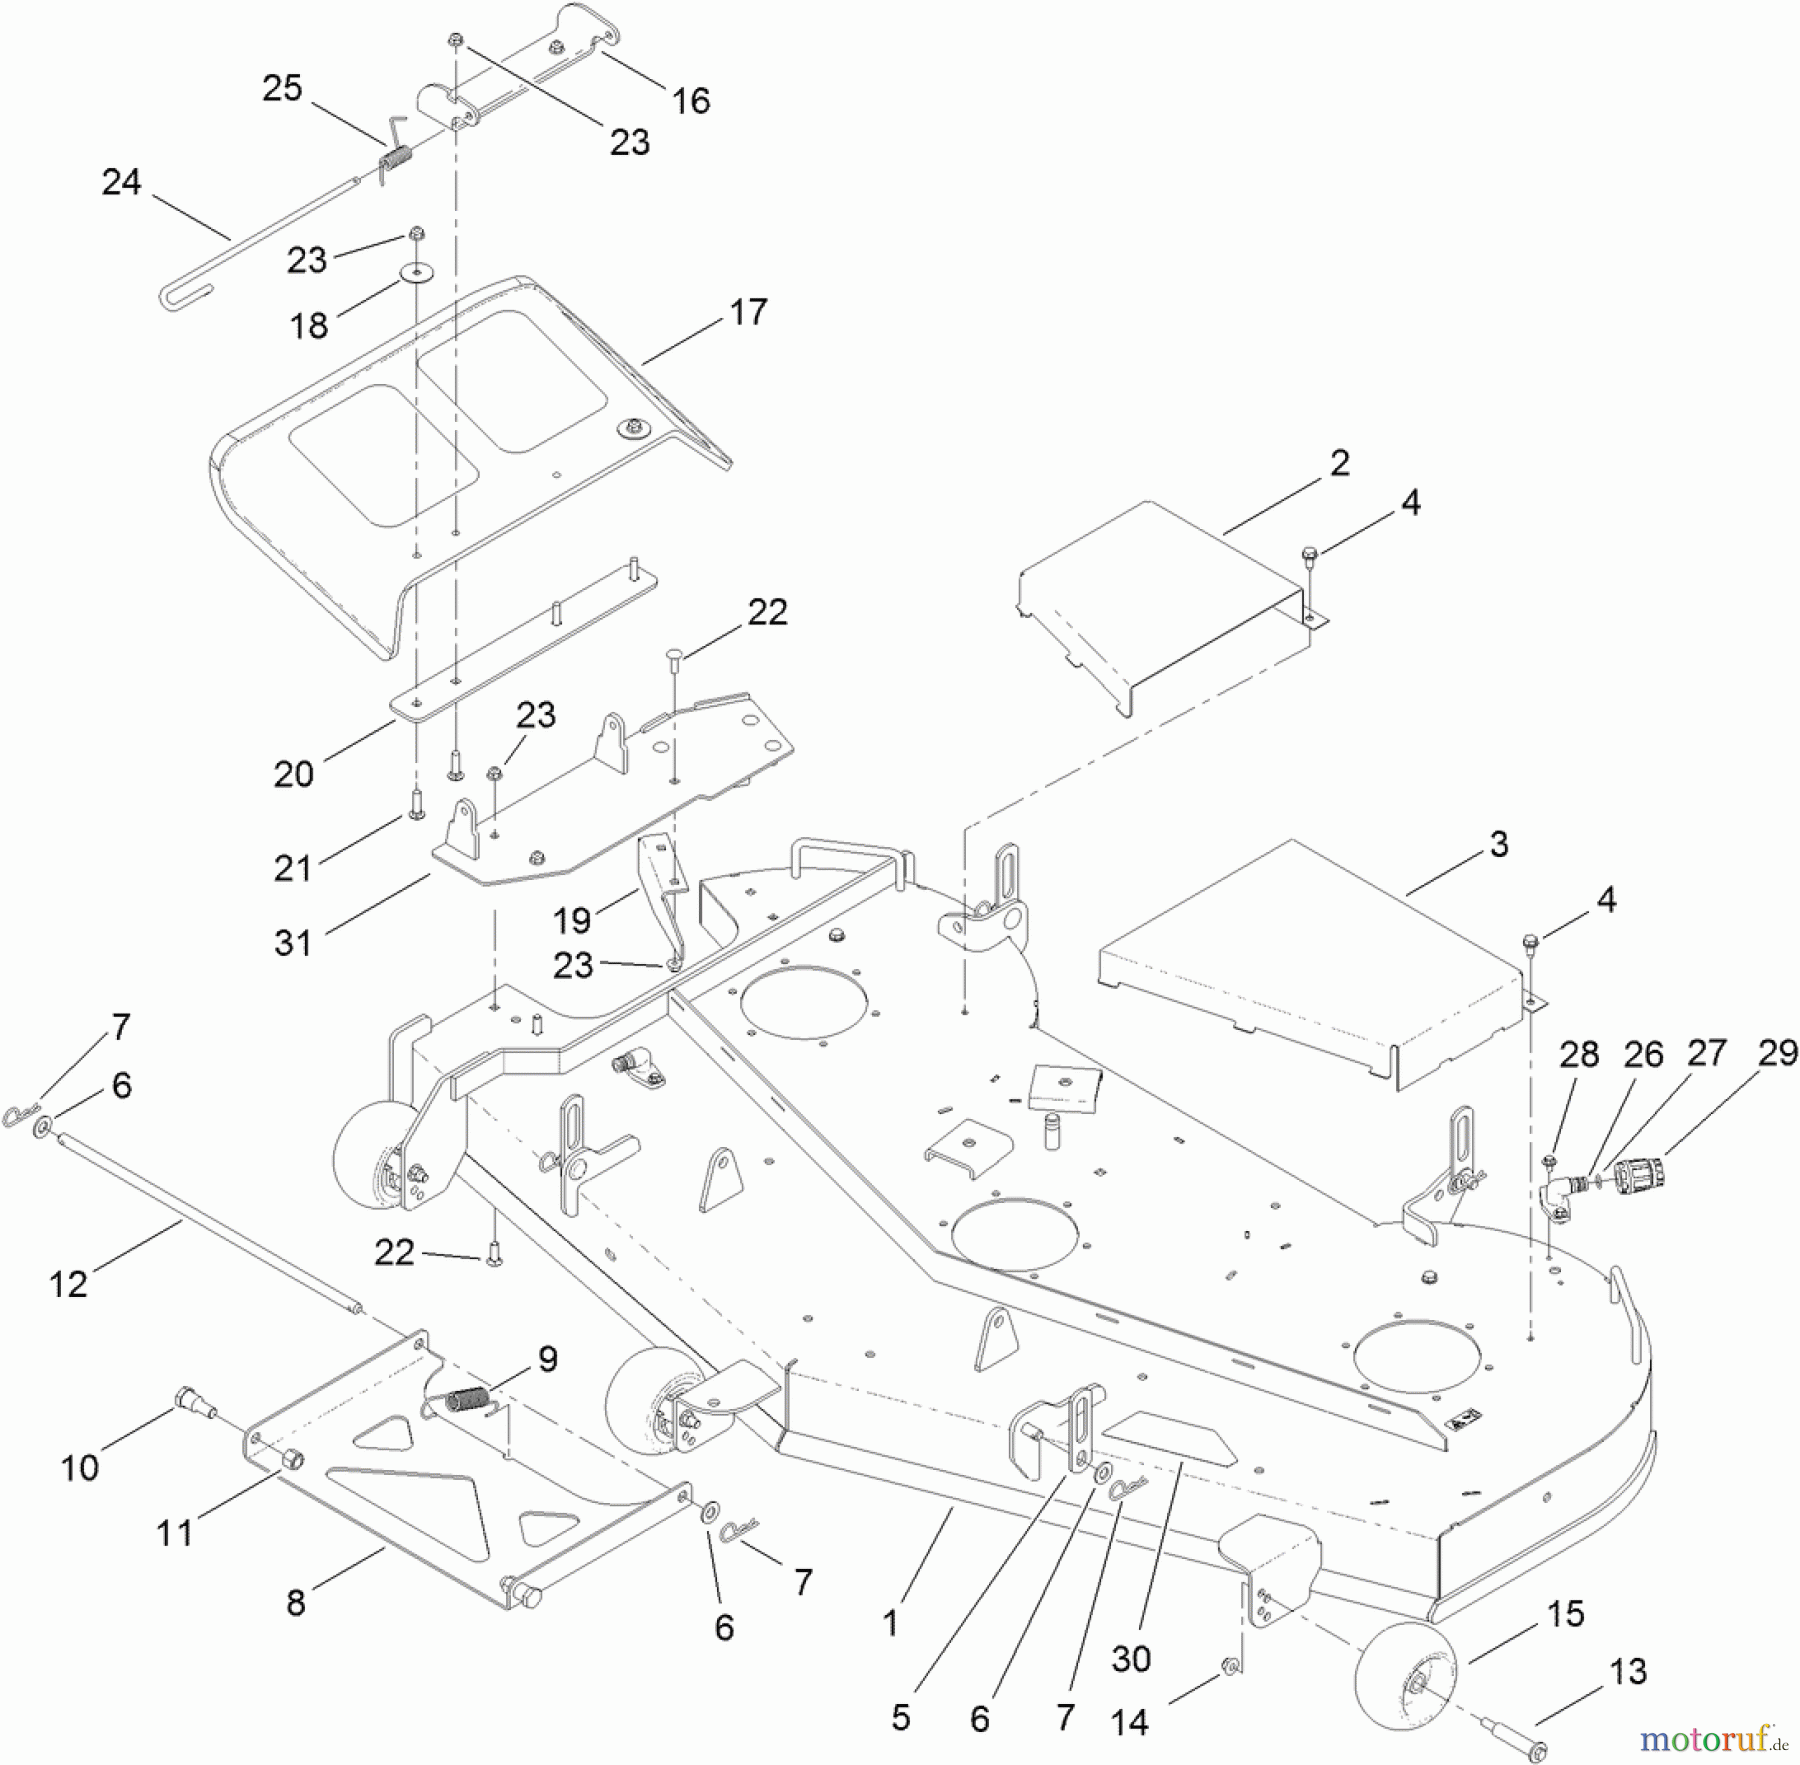  Toro Neu Mowers, Zero-Turn 74843 (ZX6020) - Toro TITAN ZX6020 Zero-Turn-Radius Riding Mower, 2011 (311000001-311999999) 60 INCH DECK ASSEMBLY